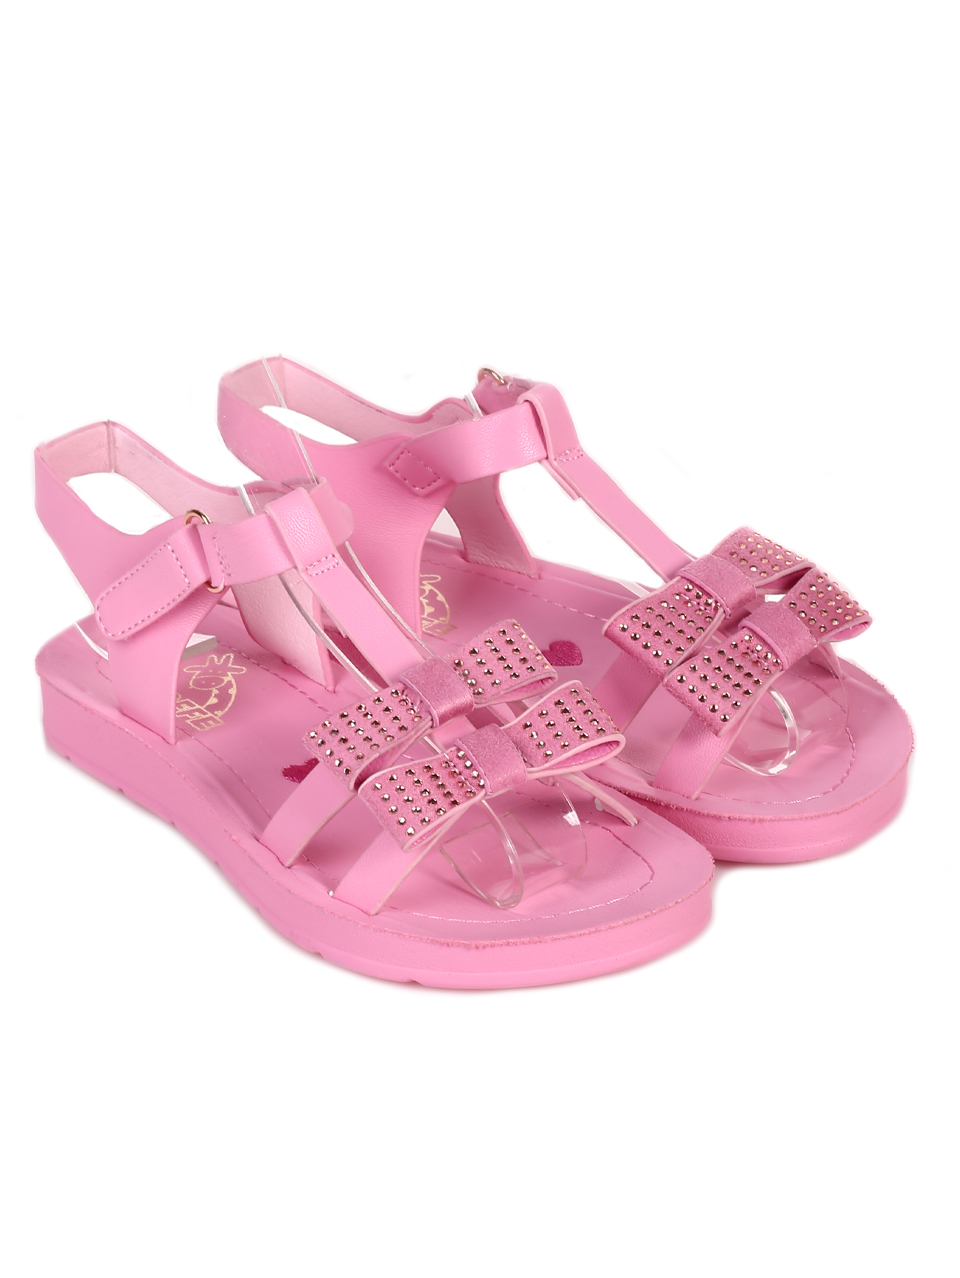 Ежедневни детски комфортни сандали в розово 17F-23239 pink